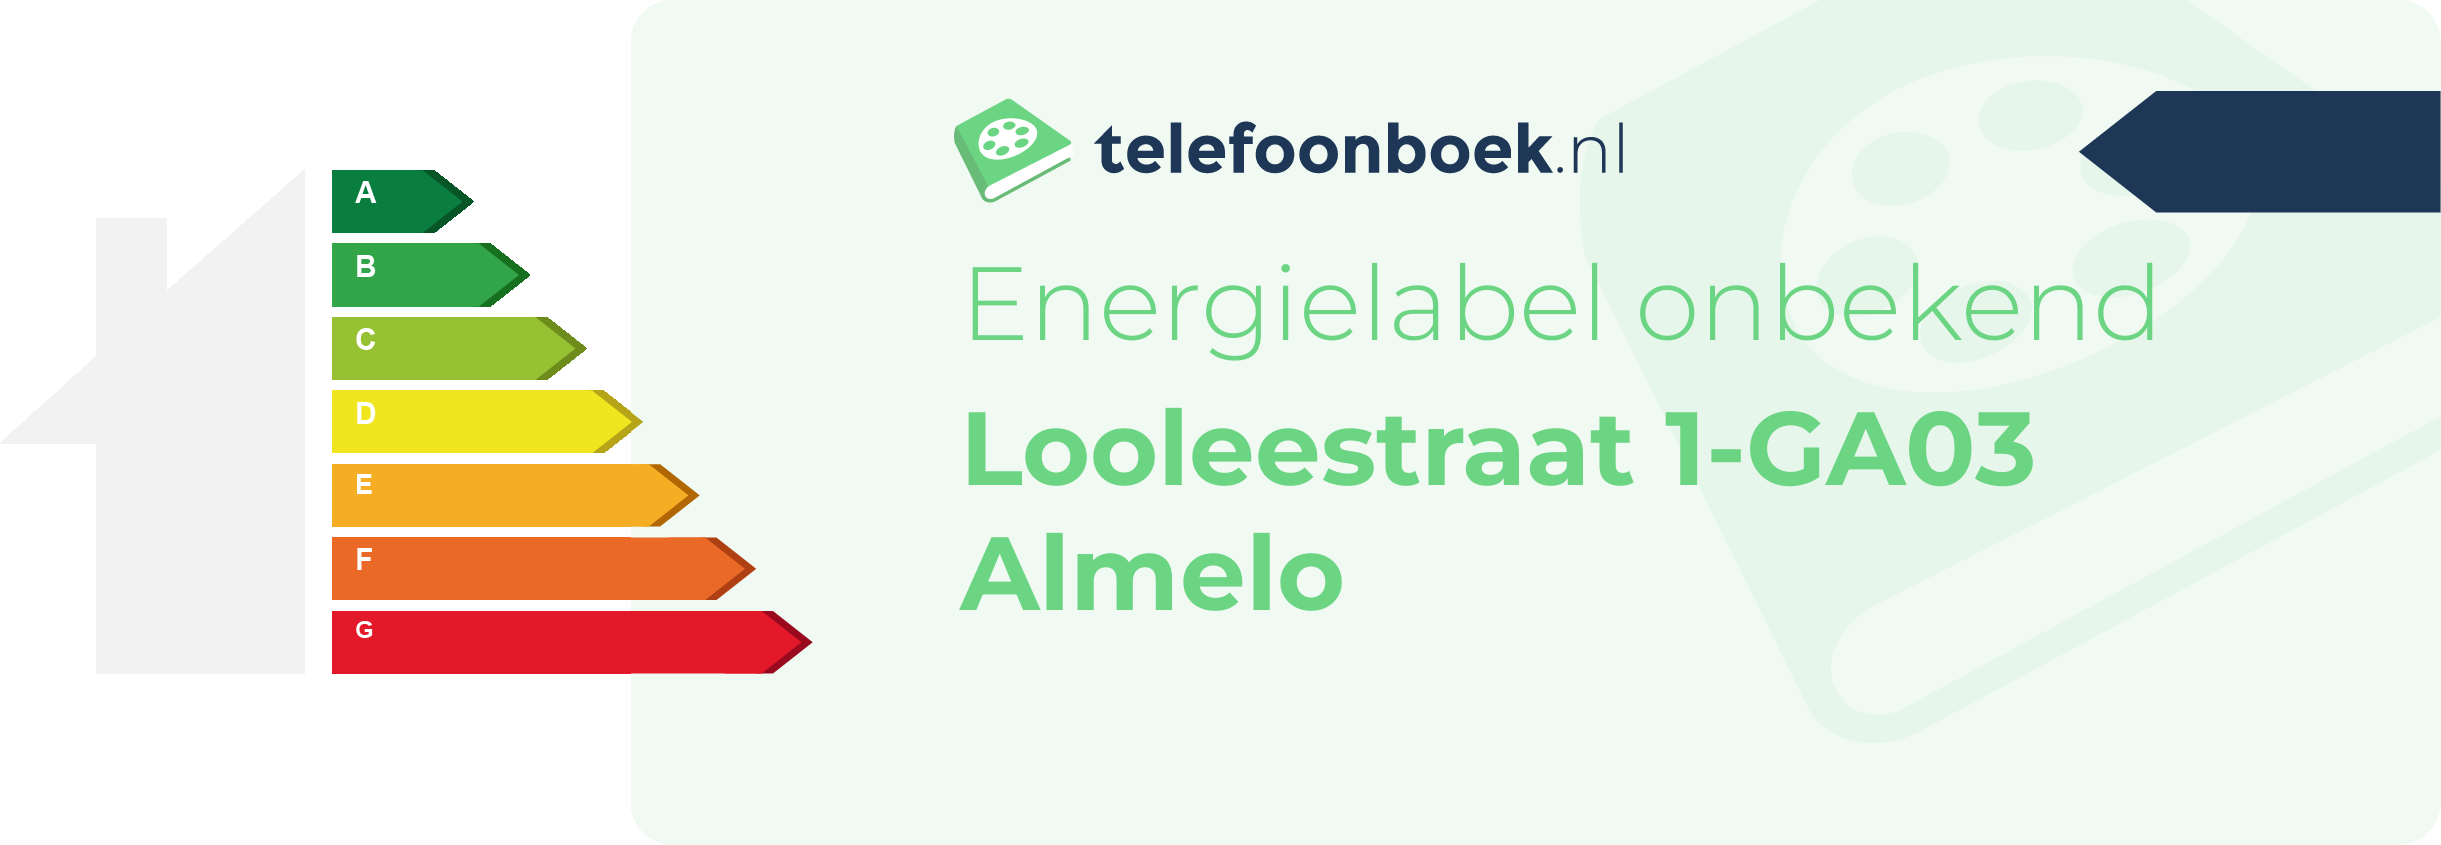 Energielabel Looleestraat 1-GA03 Almelo